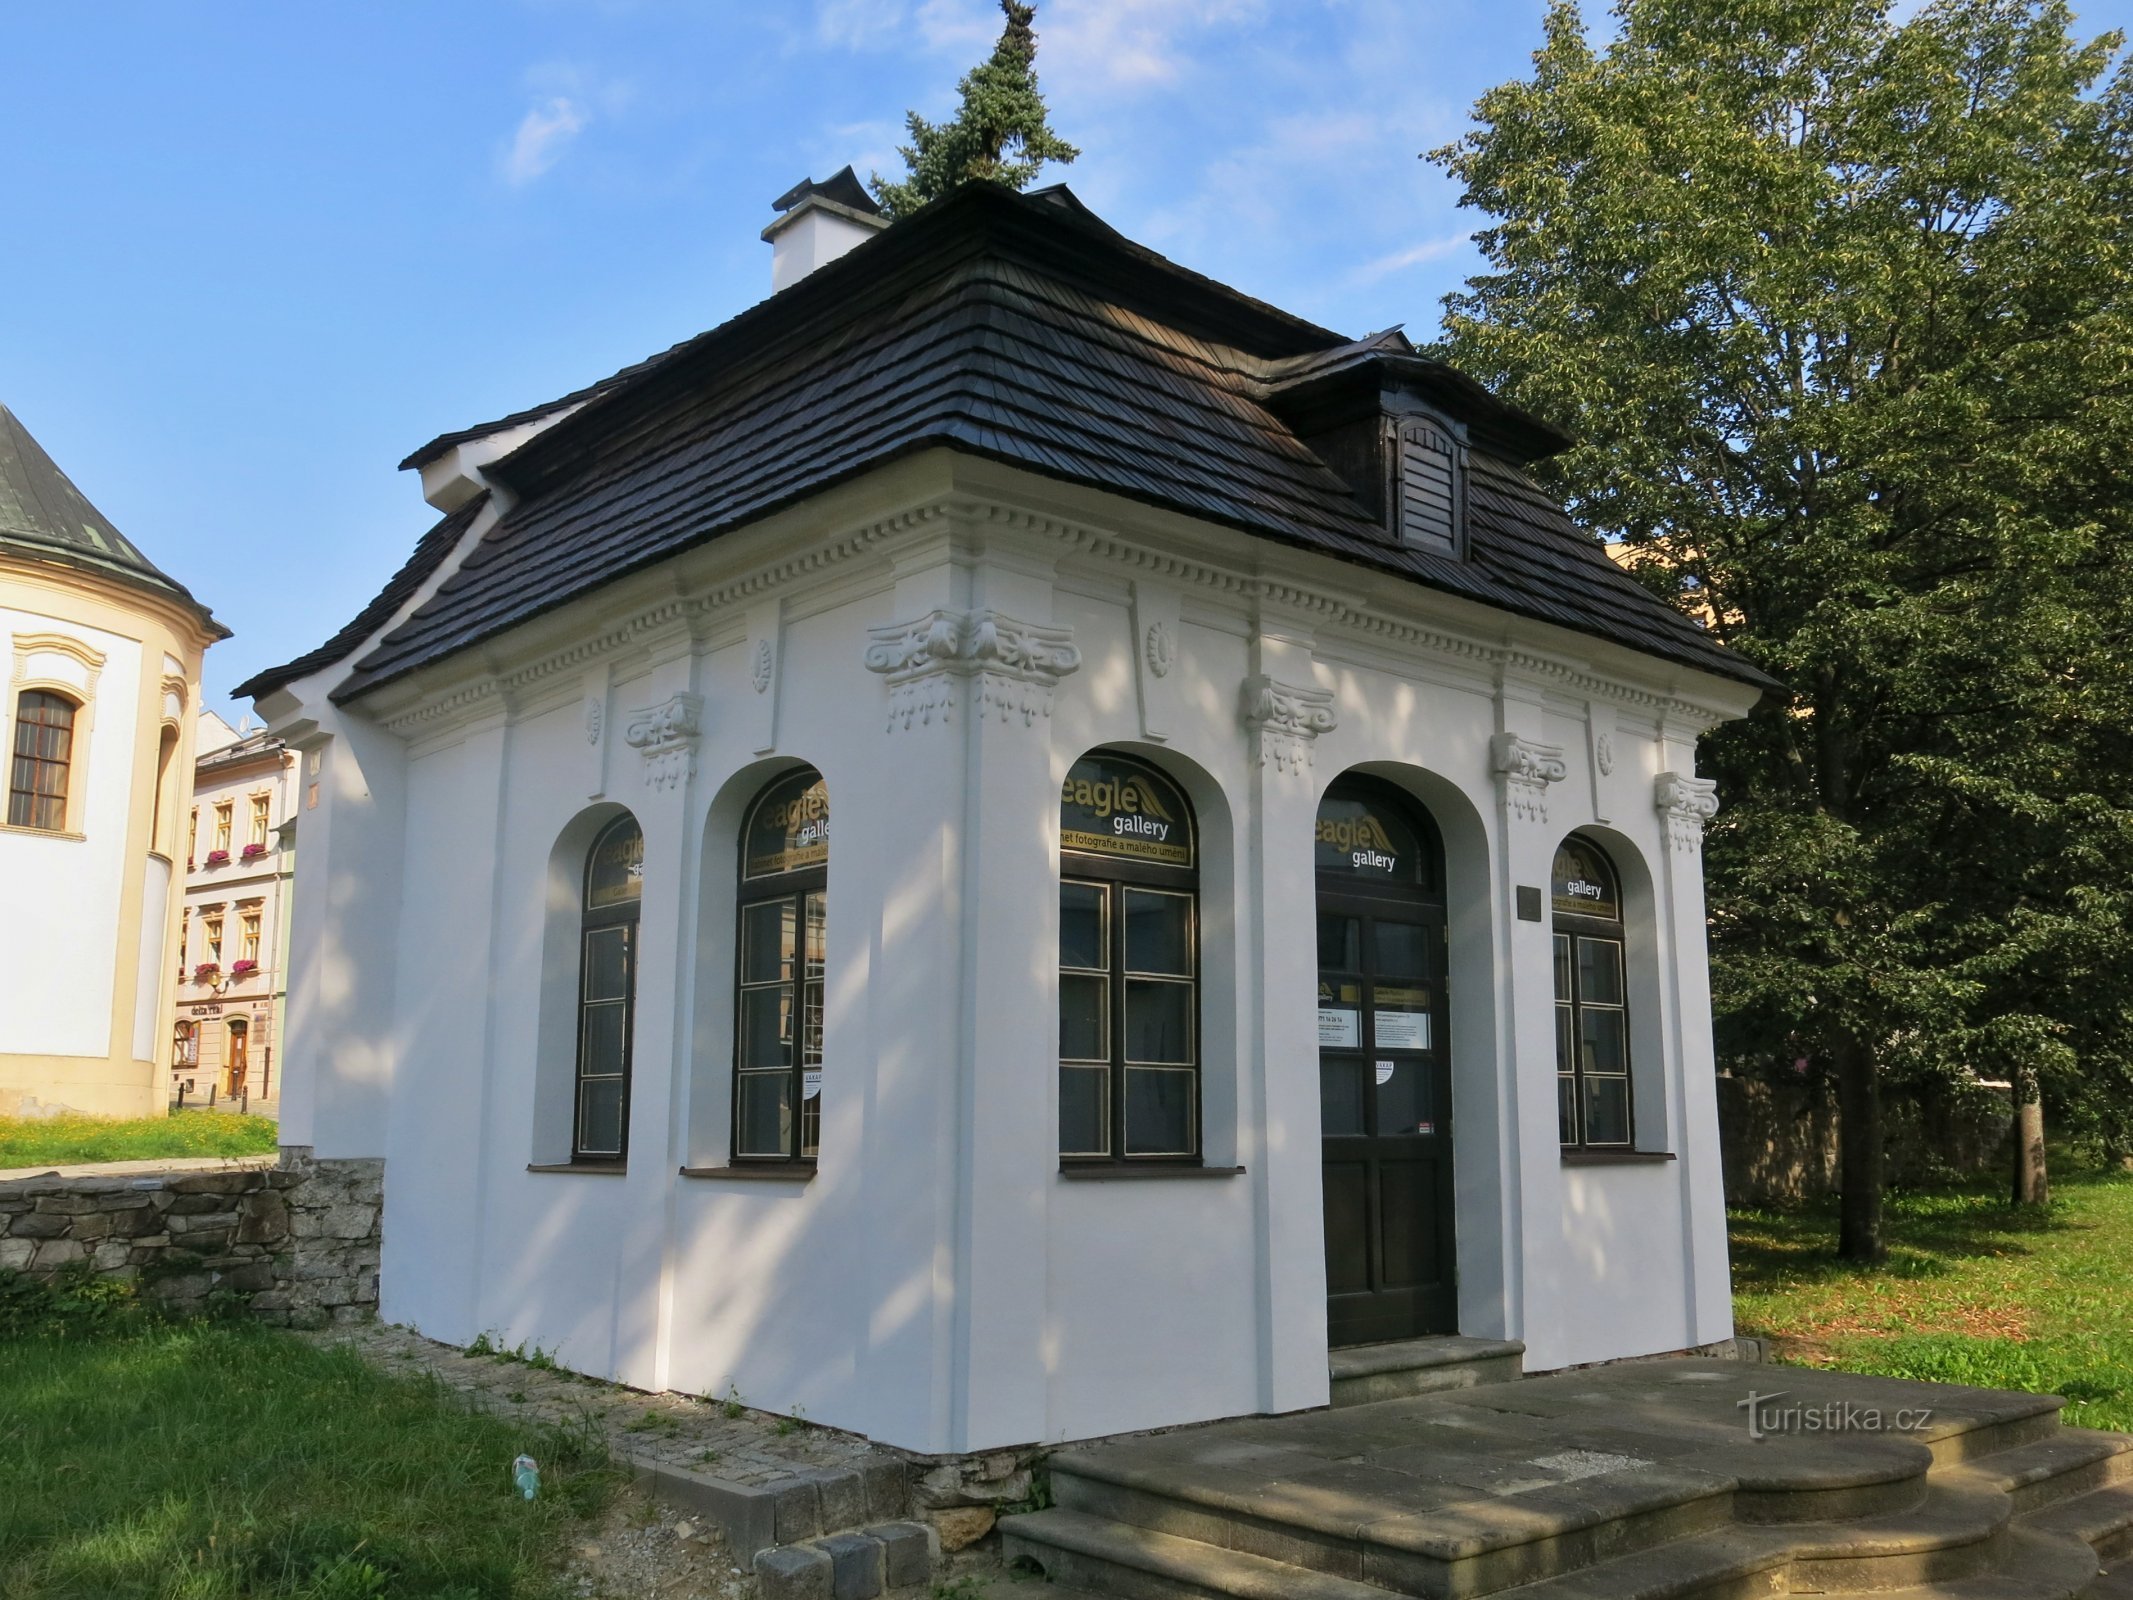 Šumperk – Galerie Pavilon, az első önkiszolgáló galéria Csehországban